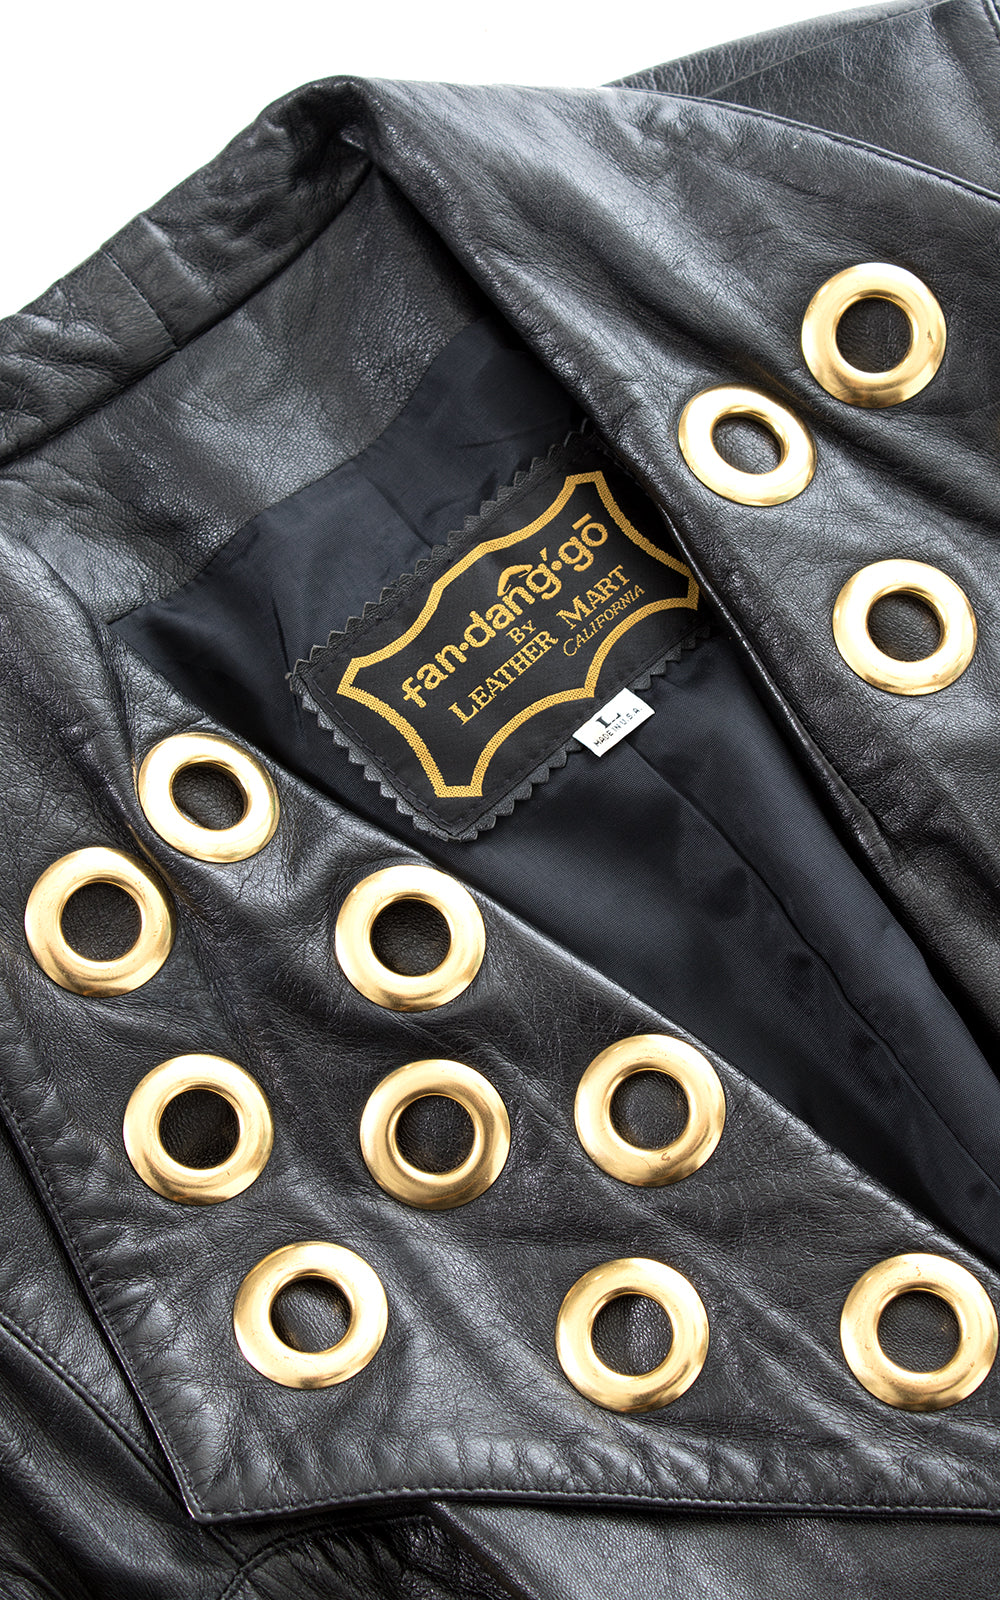 1980s 1990s Gold Grommet & Black Leather Belted Jacket